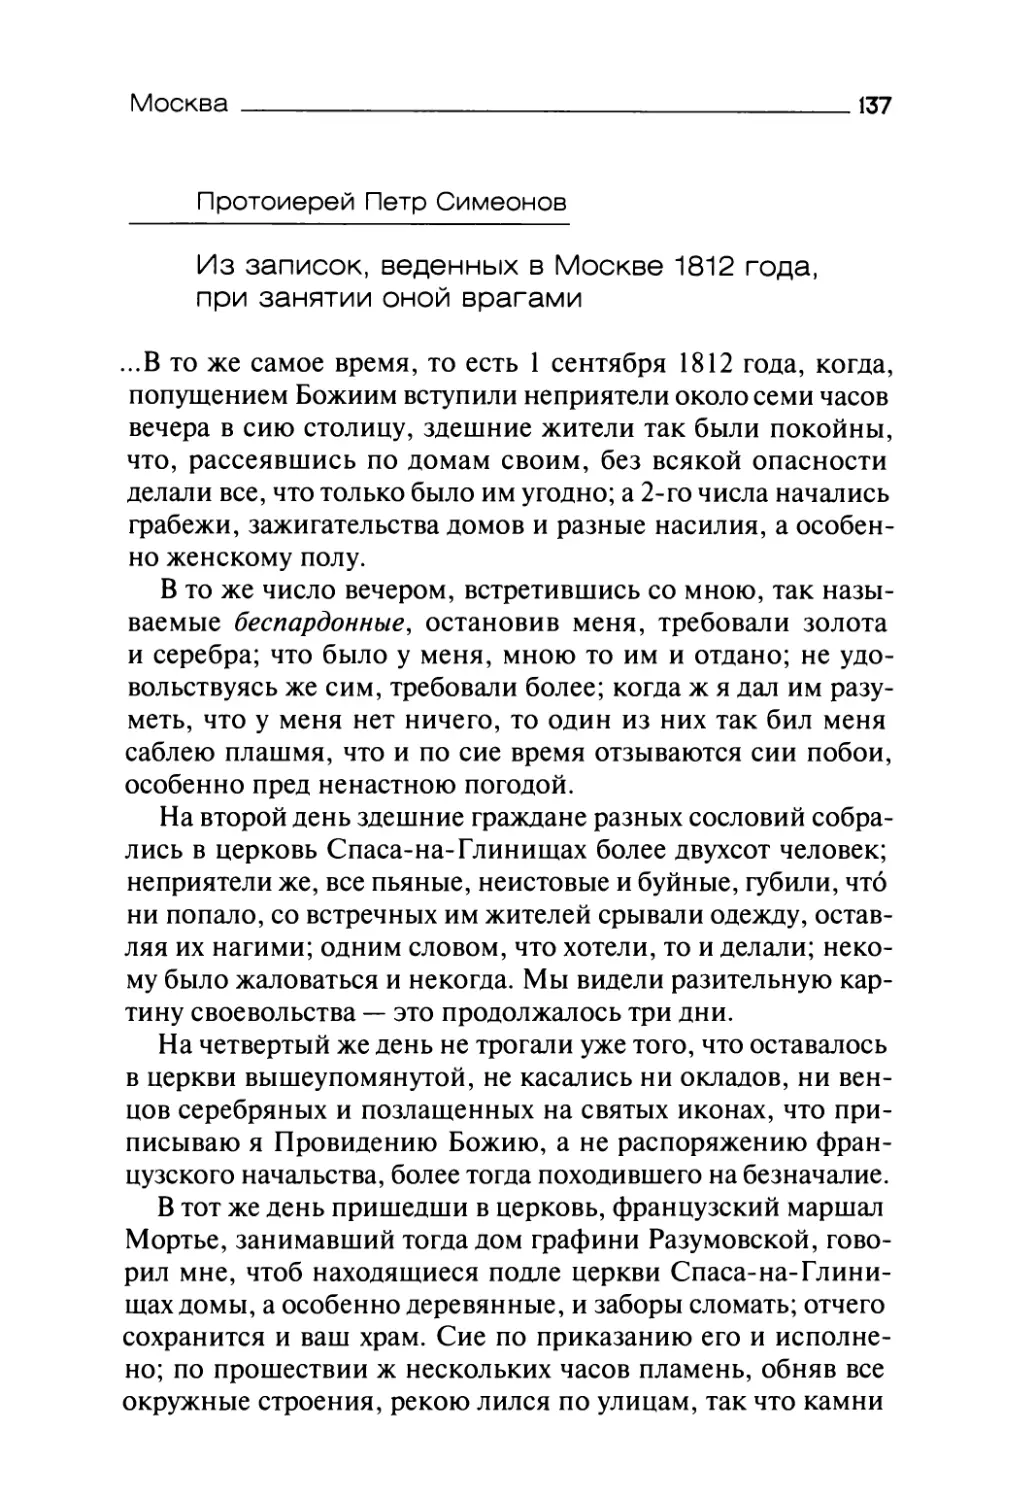 Протоиерей Петр Симеонов. Из записок, веденных в Москве 1812 года, при занятии оной врагами